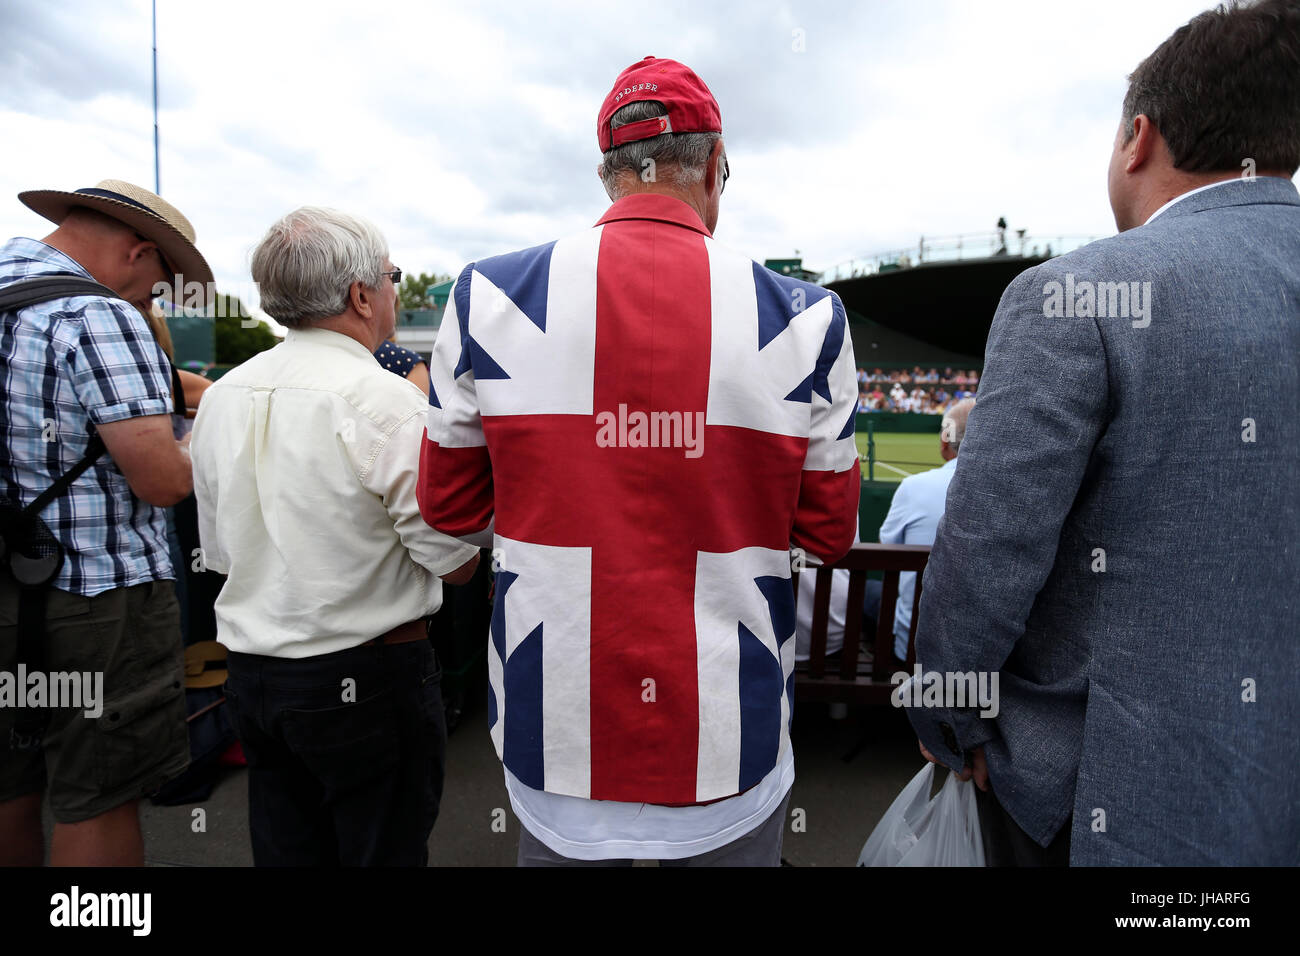 Un spectateur portant une veste de tennis syndicale le dixième jour des championnats de Wimbledon au All England Lawn tennis and Croquet Club, Wimbledon. Banque D'Images